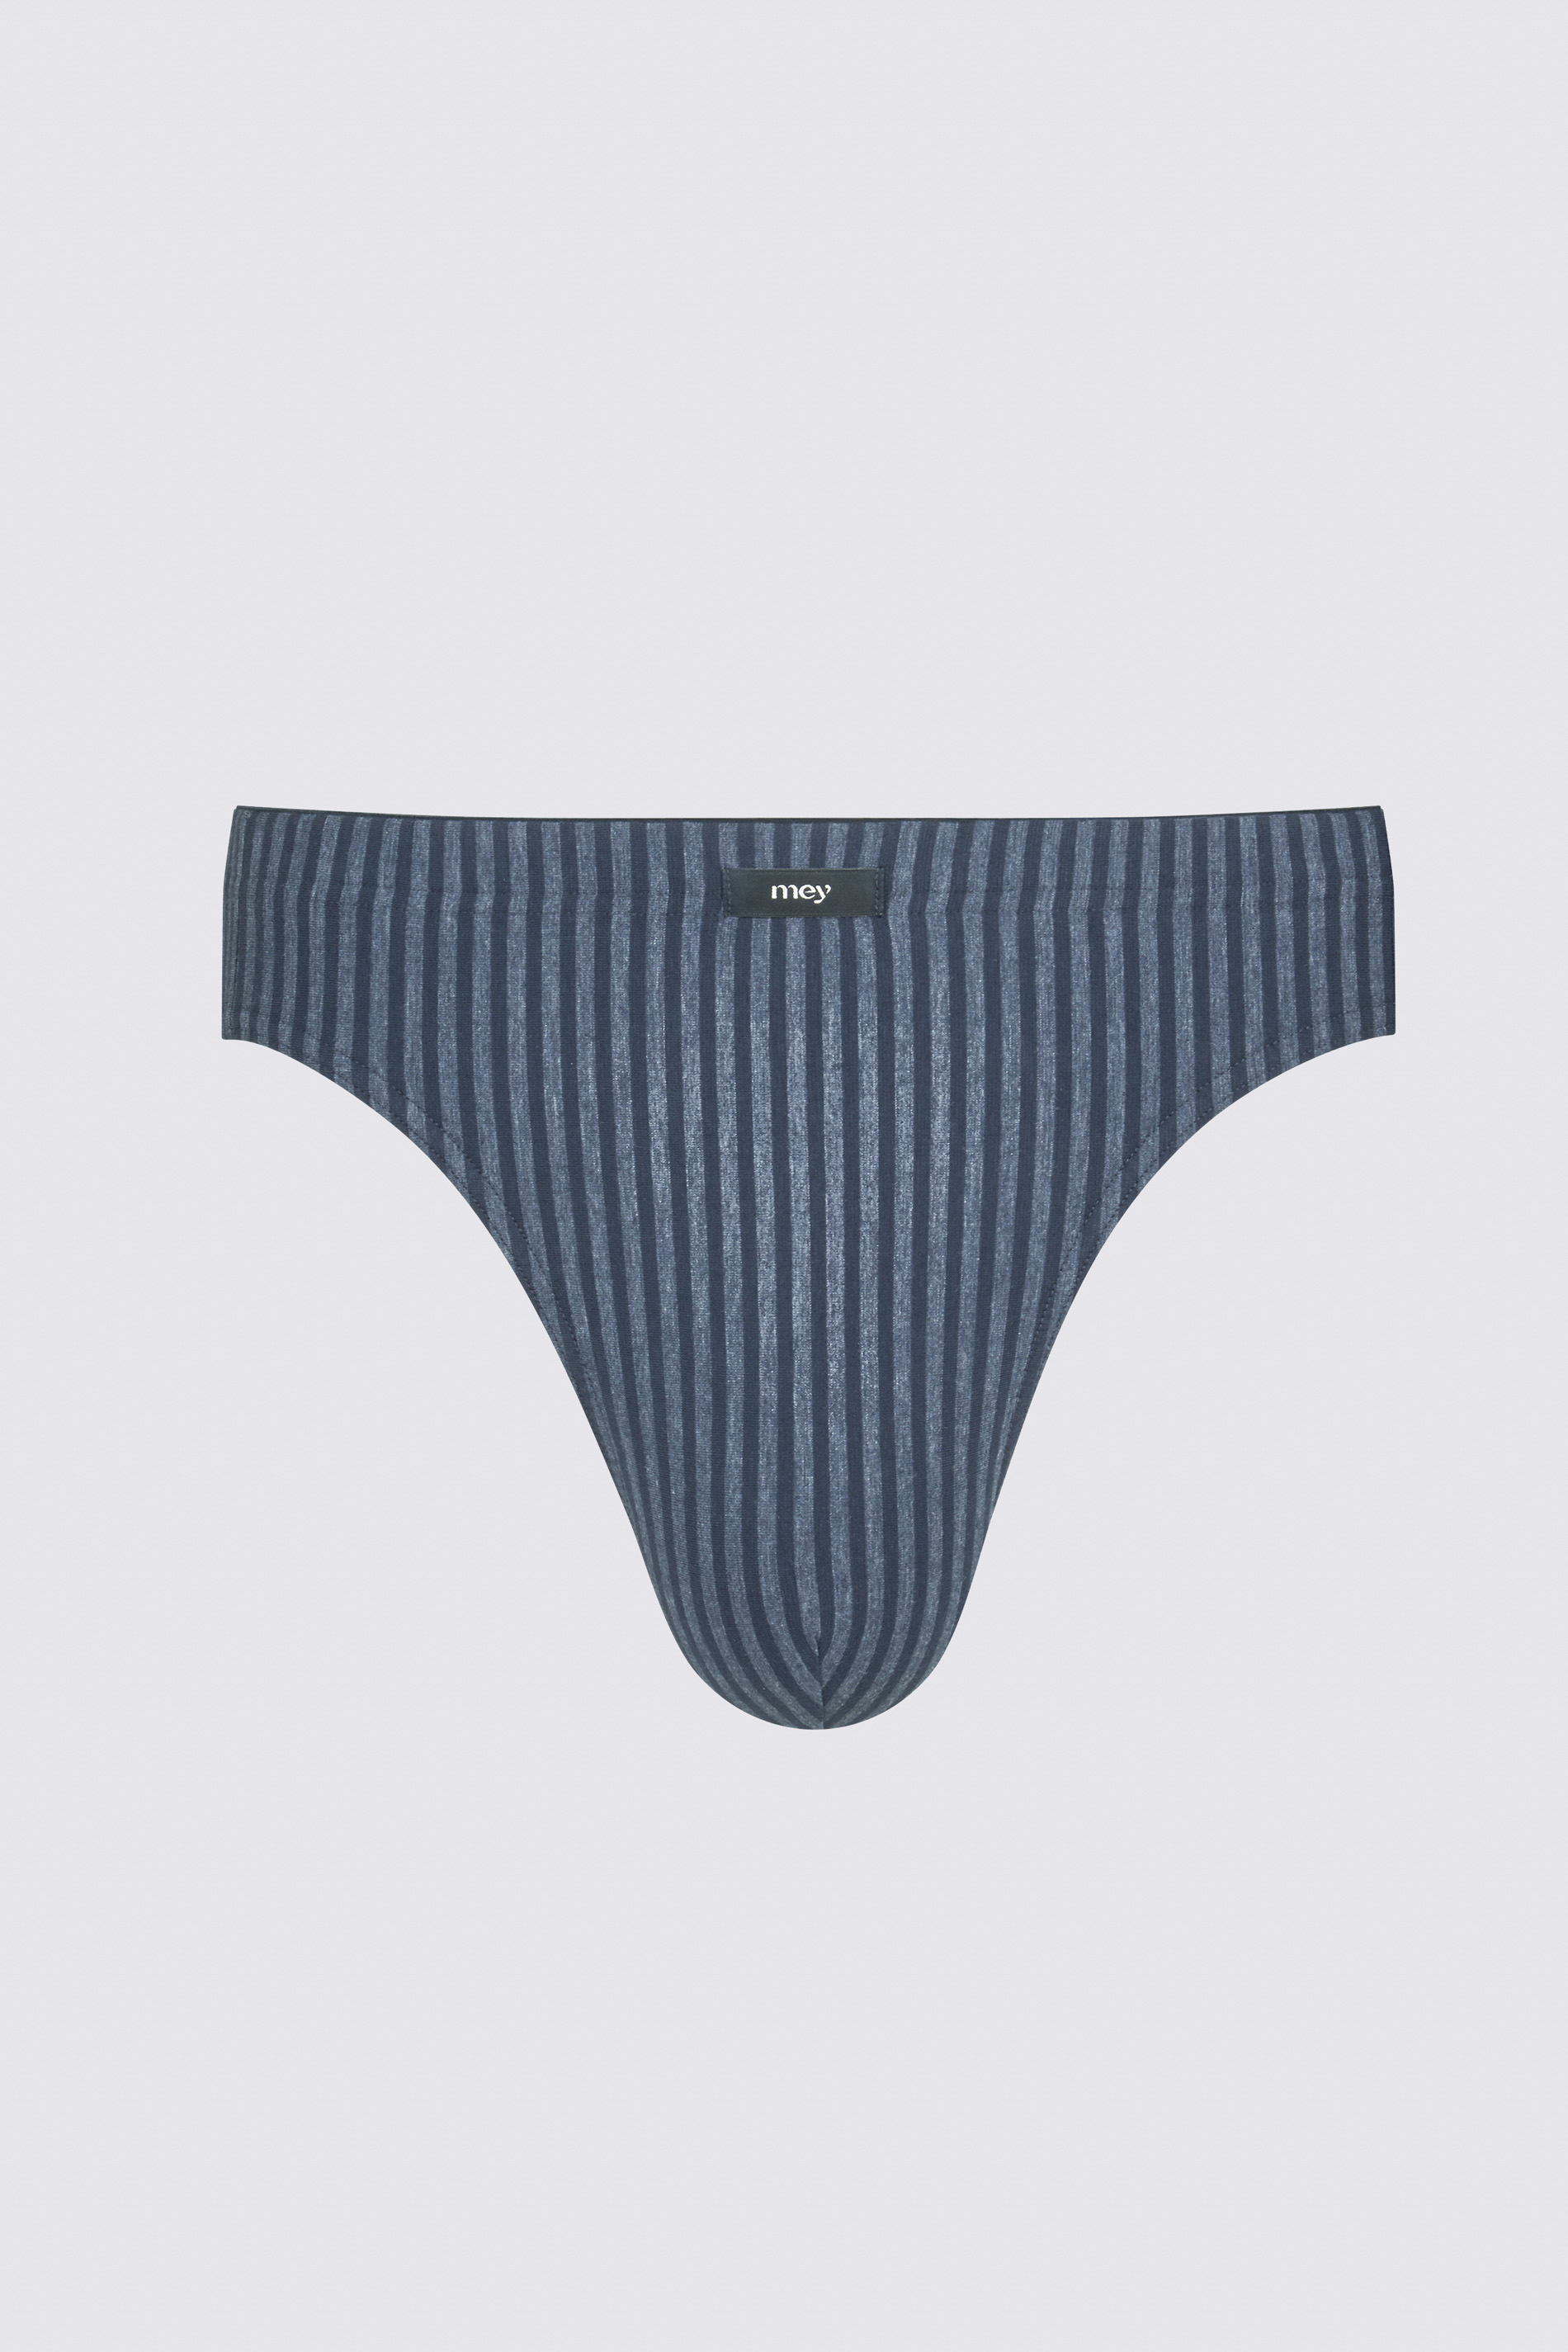 Jazz-Pants Yacht Blue Serie Tonal Stripes Freisteller | mey®